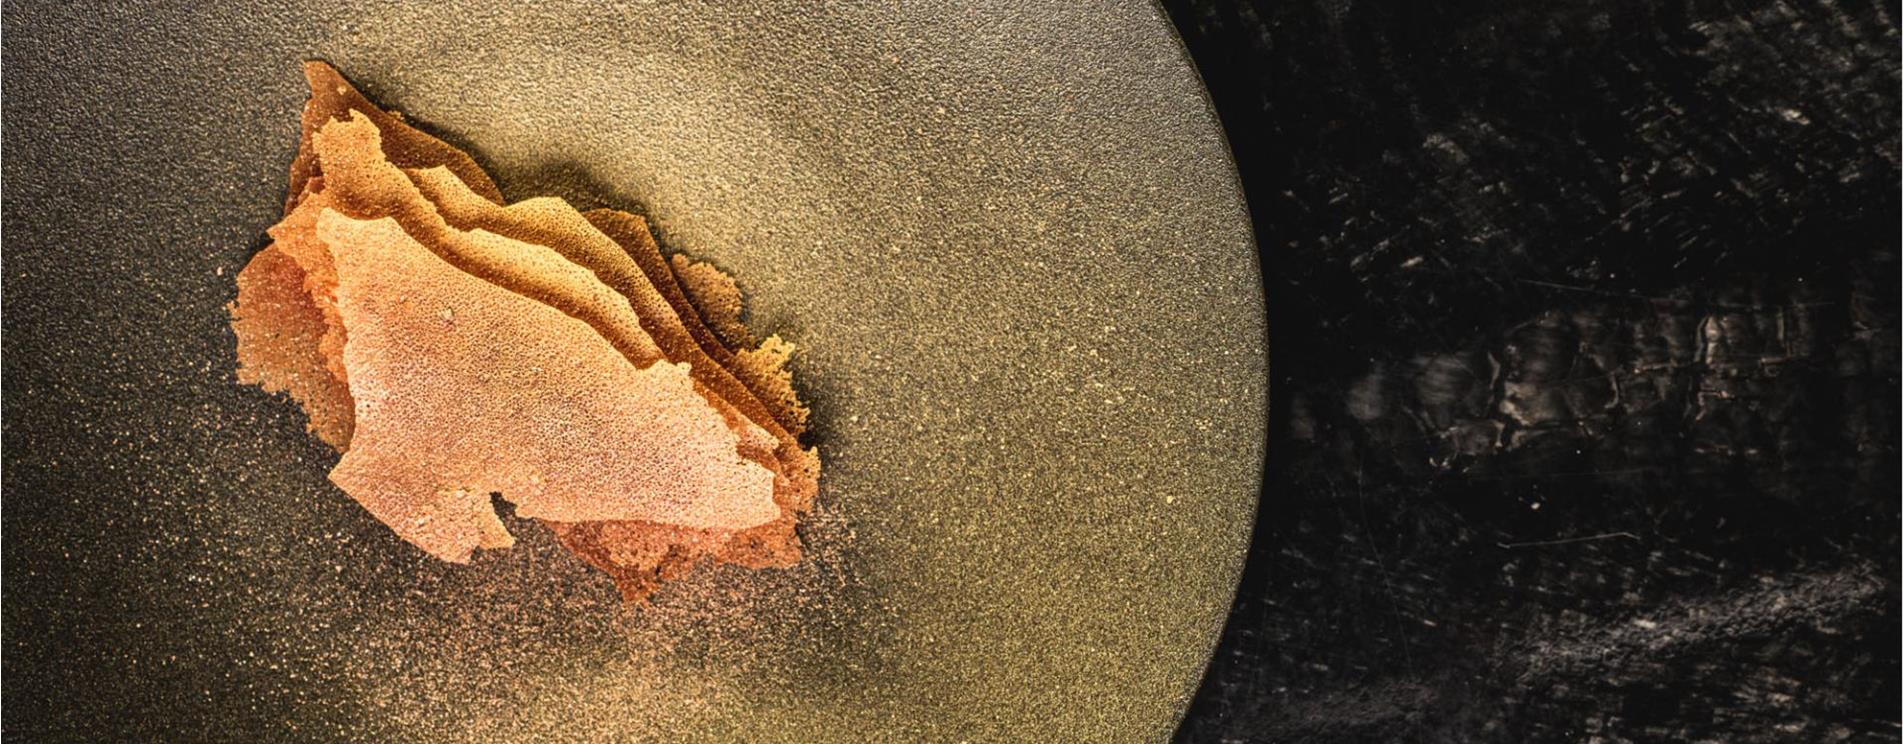 Golden Dessert: the final touch of Your Gourmet dinner